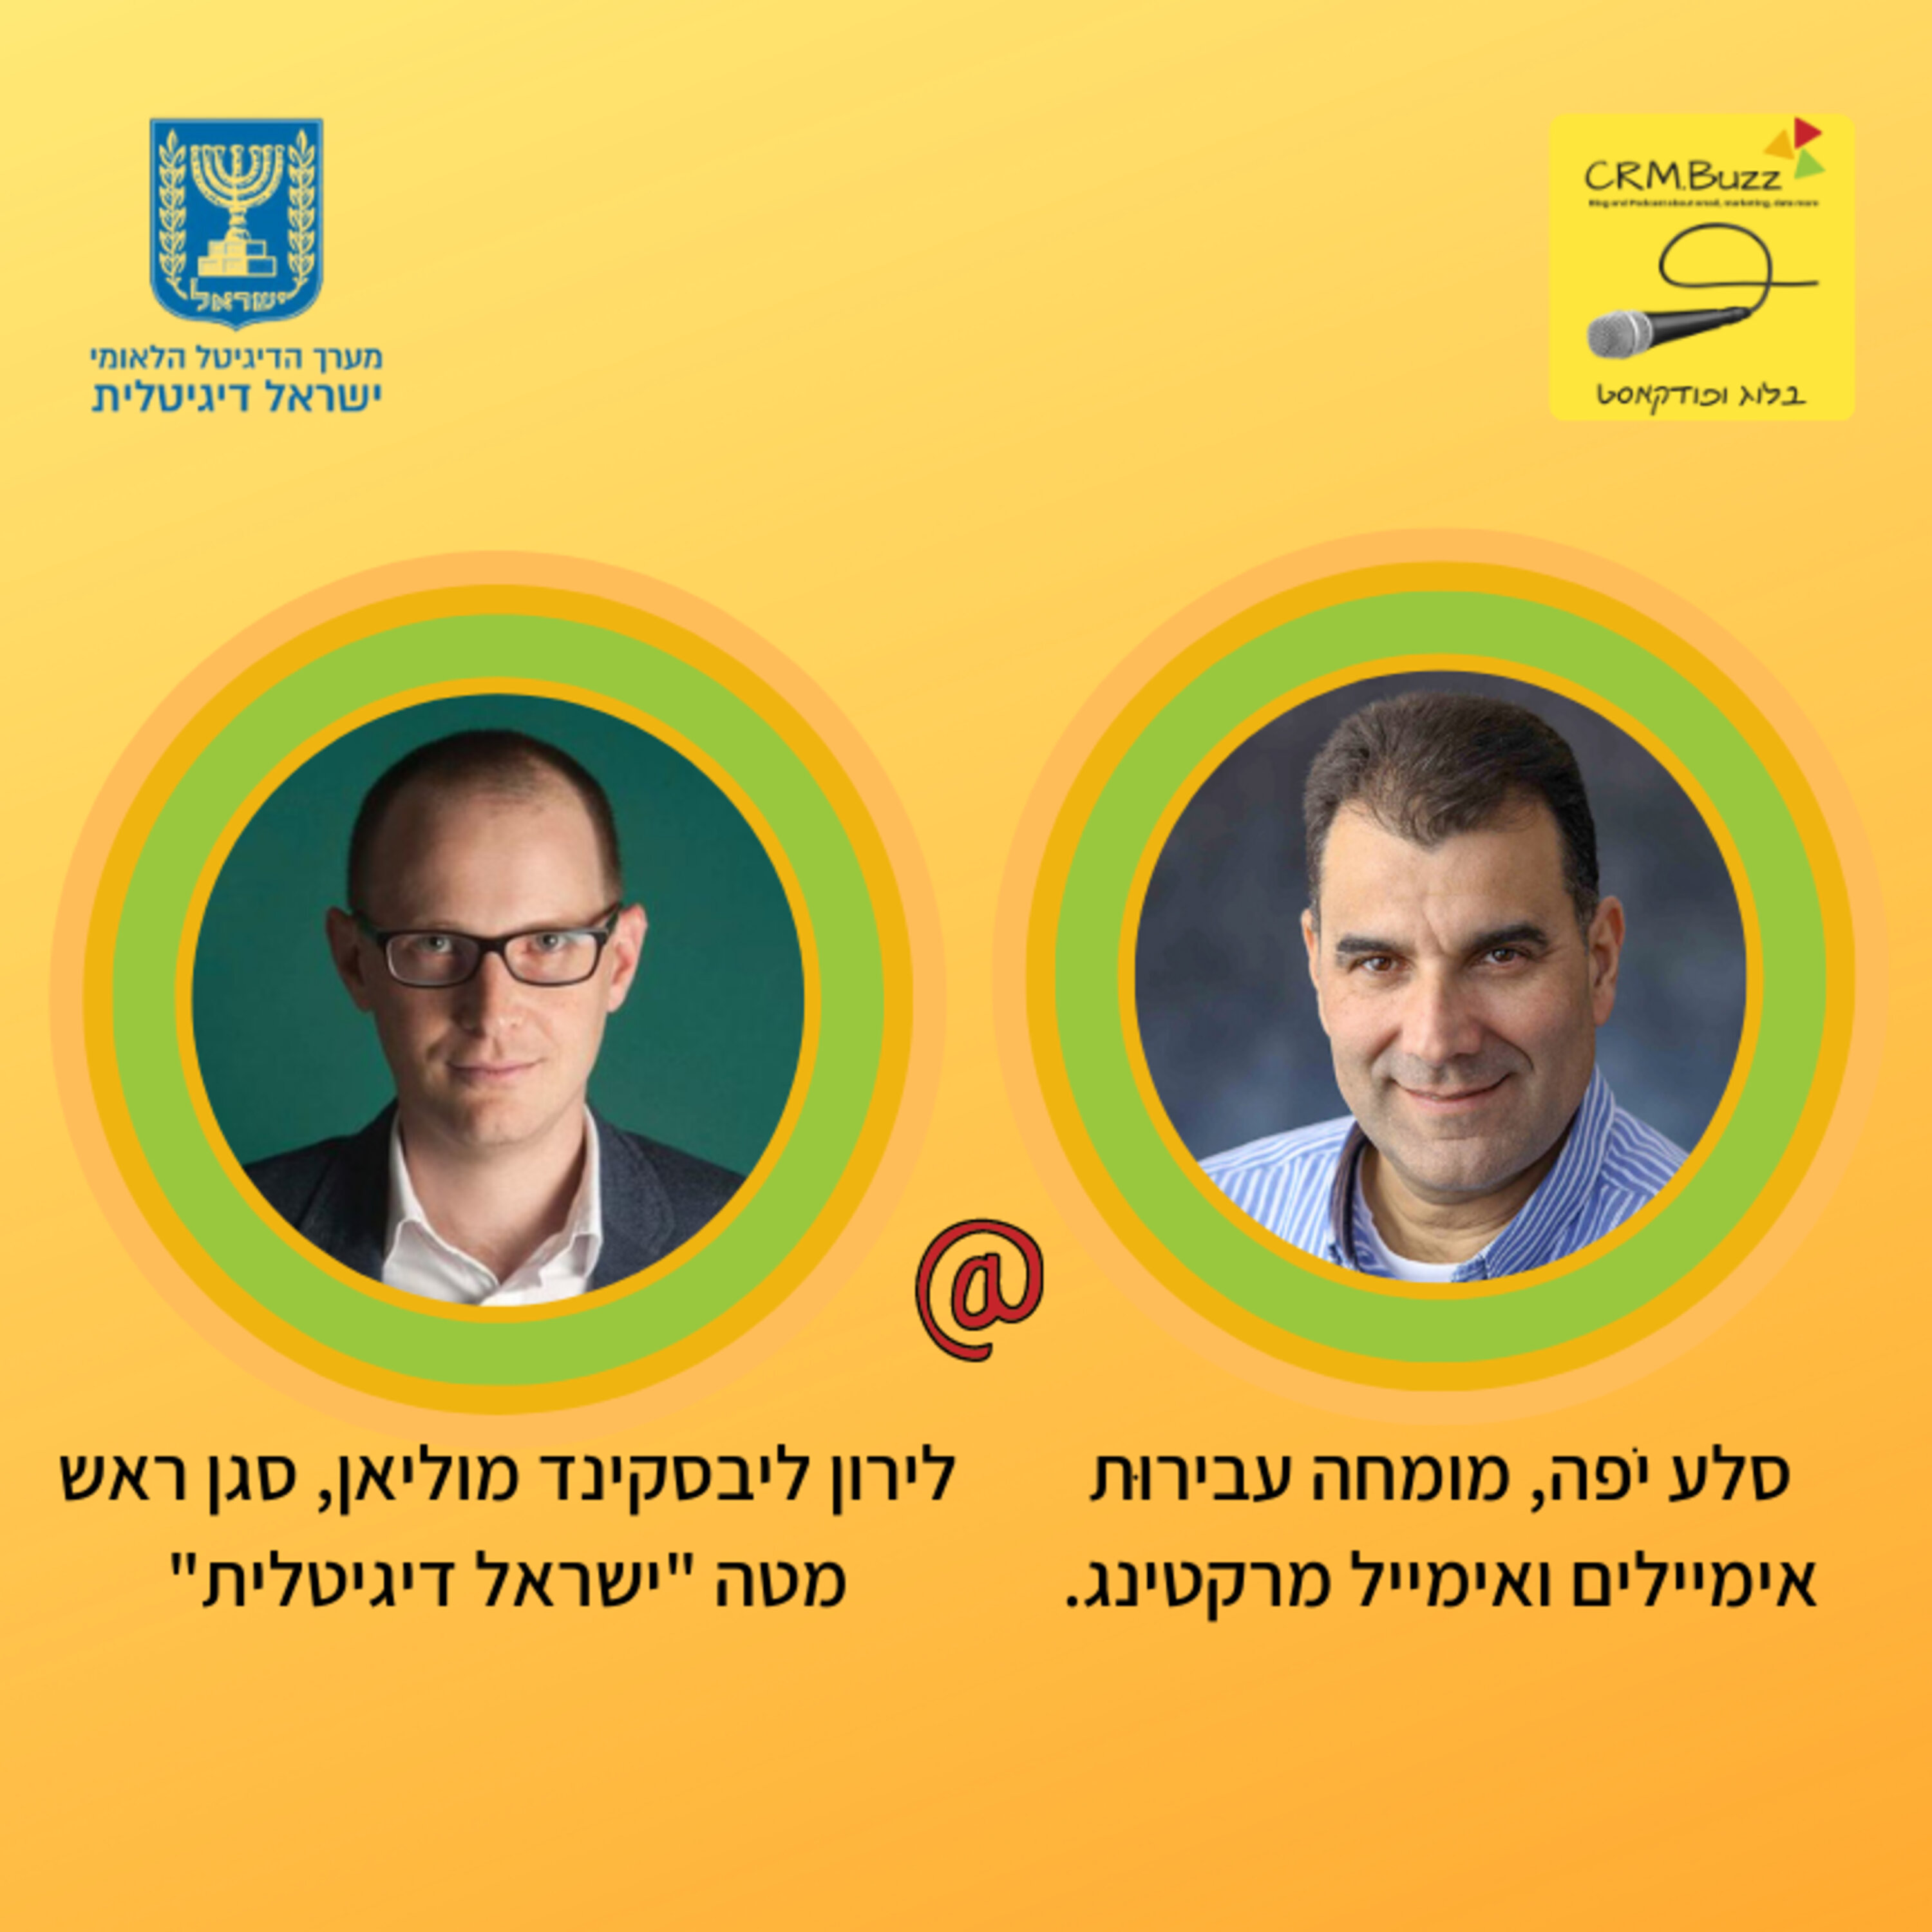 ראיון עם לירון ליבסקינד מוליאן, סגן ראש מטה ישראלית על חוק הדיוור הדיגיטלי